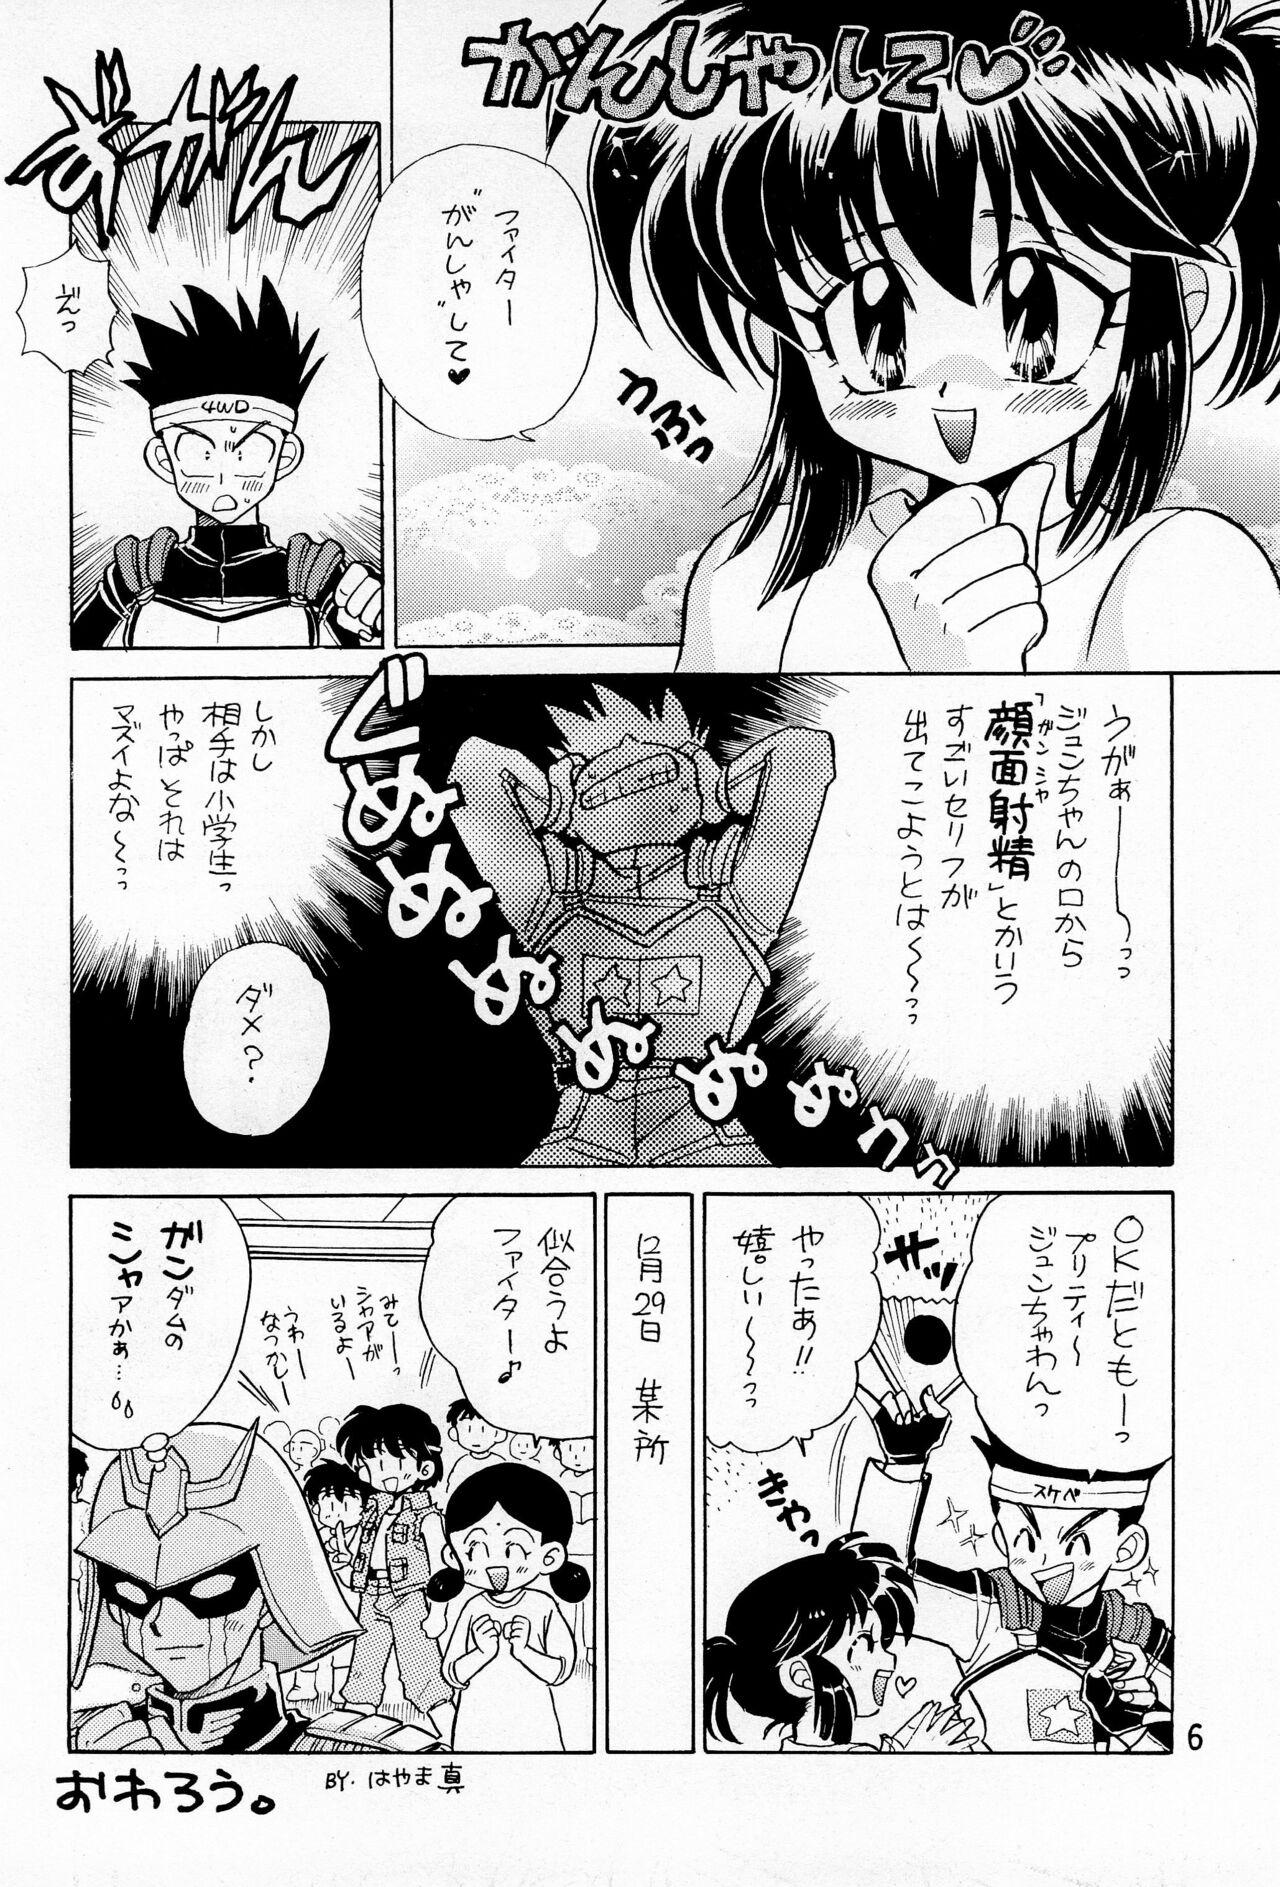 Cartoon Hinerinasai!! - Bakusou kyoudai lets and go Breast - Page 8